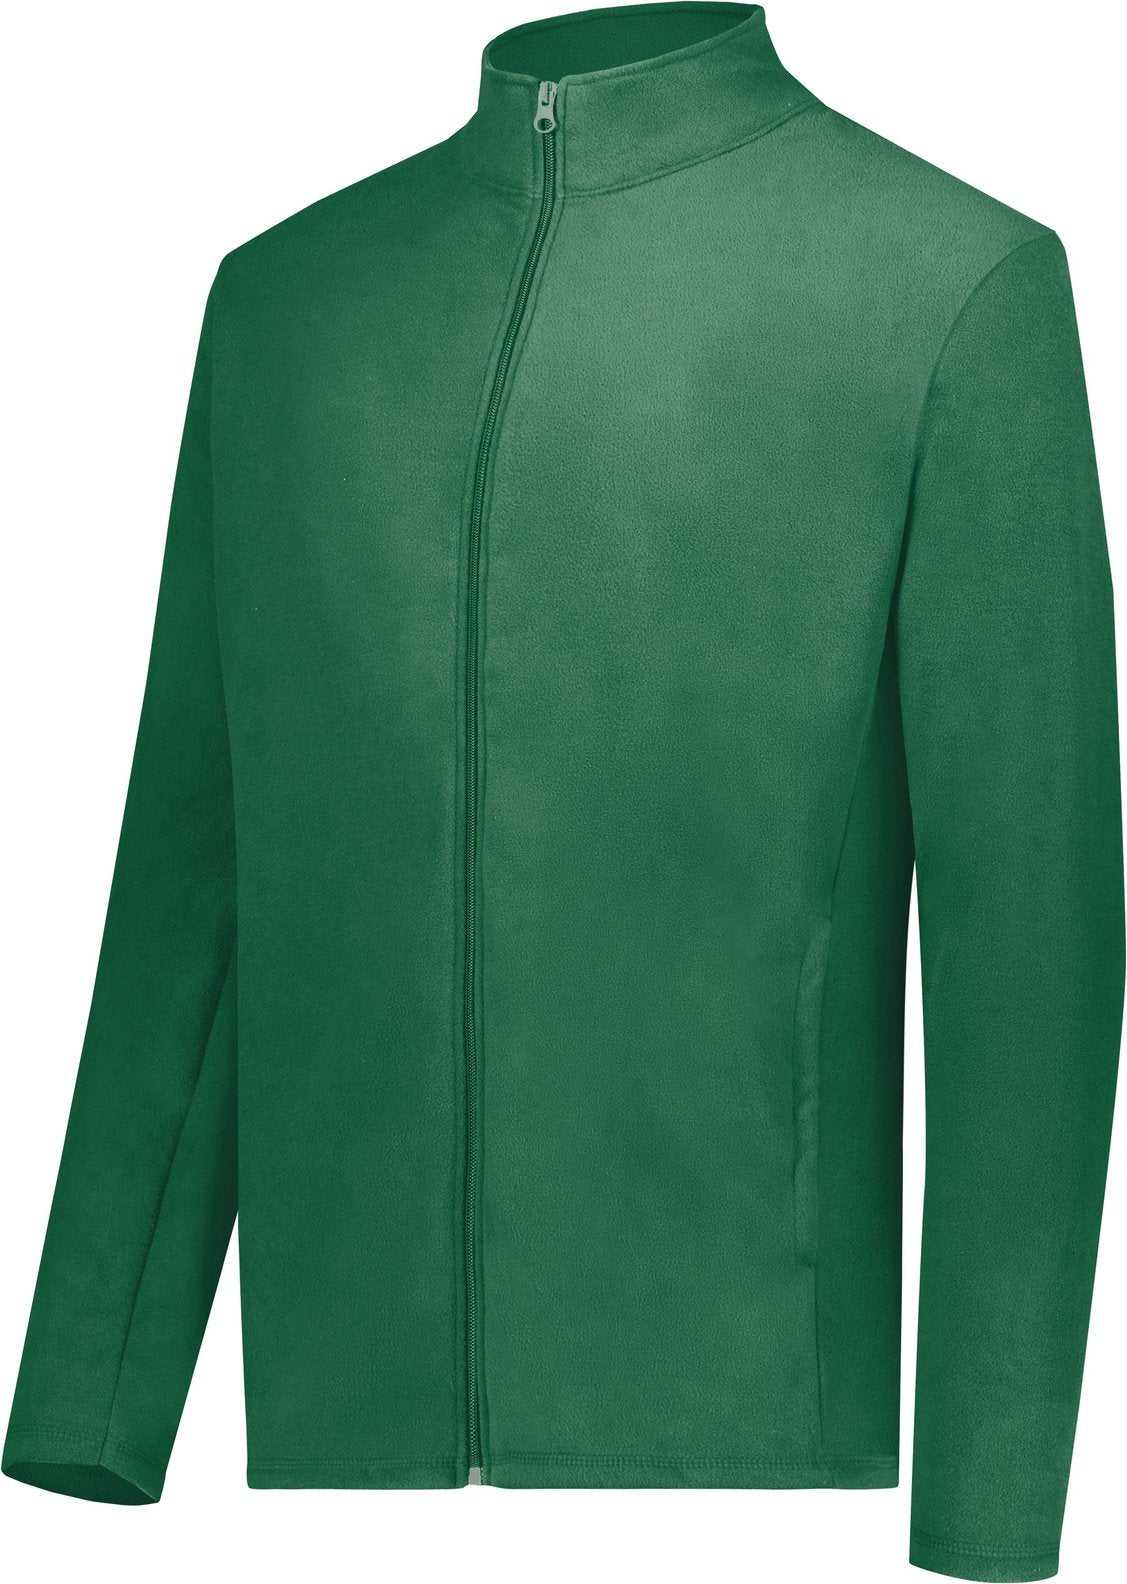 Augusta 6861 Micro-Lite Fleece Full Zip Jacket - Dark Green - HIT a Double